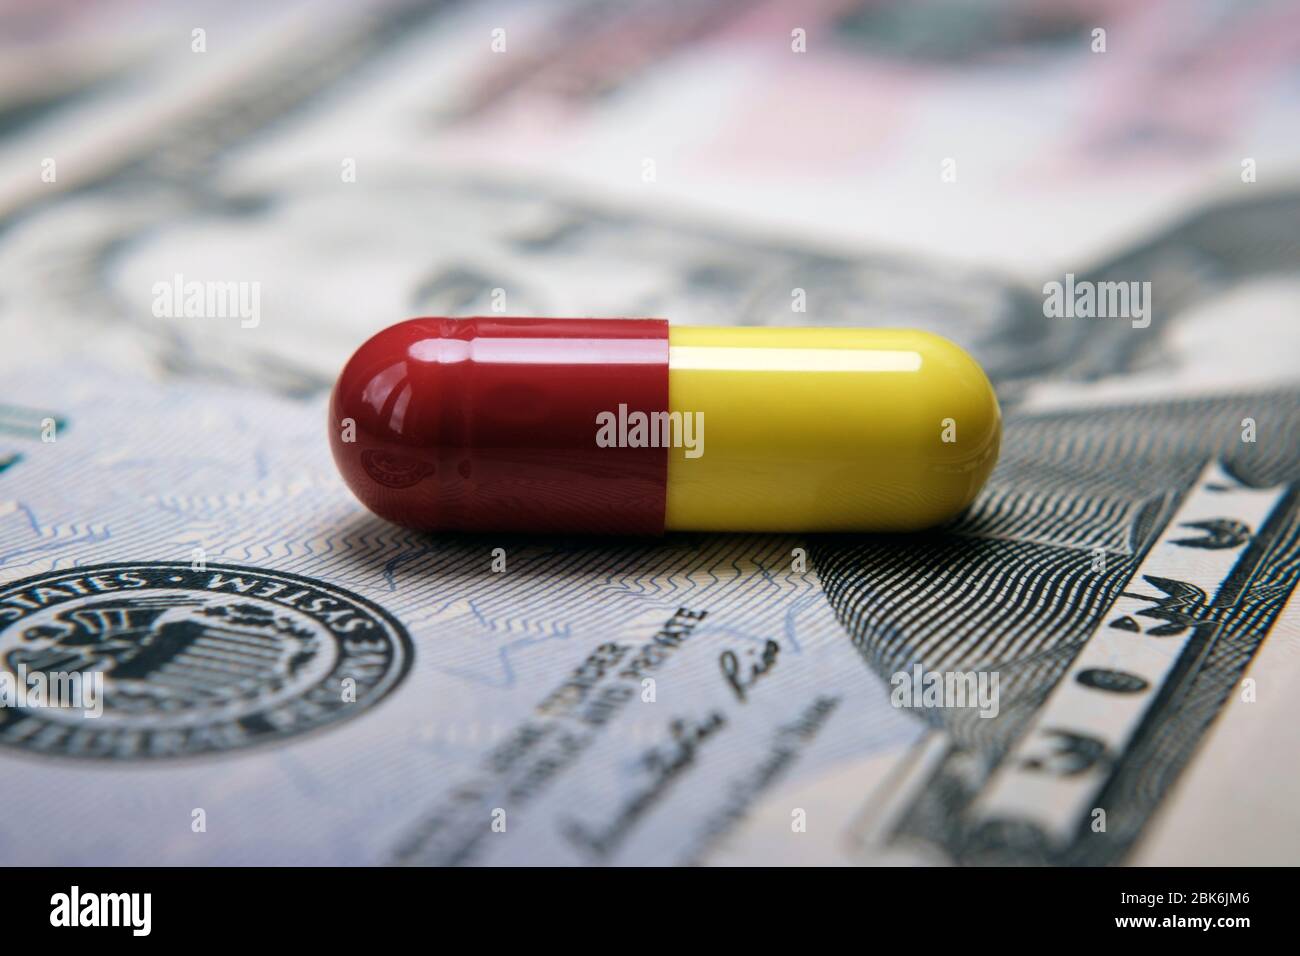 Pillola in cima a banconota da 50 dollari. Illustrativa per profitto dall'industria farmaceutica, costo delle pillole e cura medica. Foto di concetto. Foto Stock